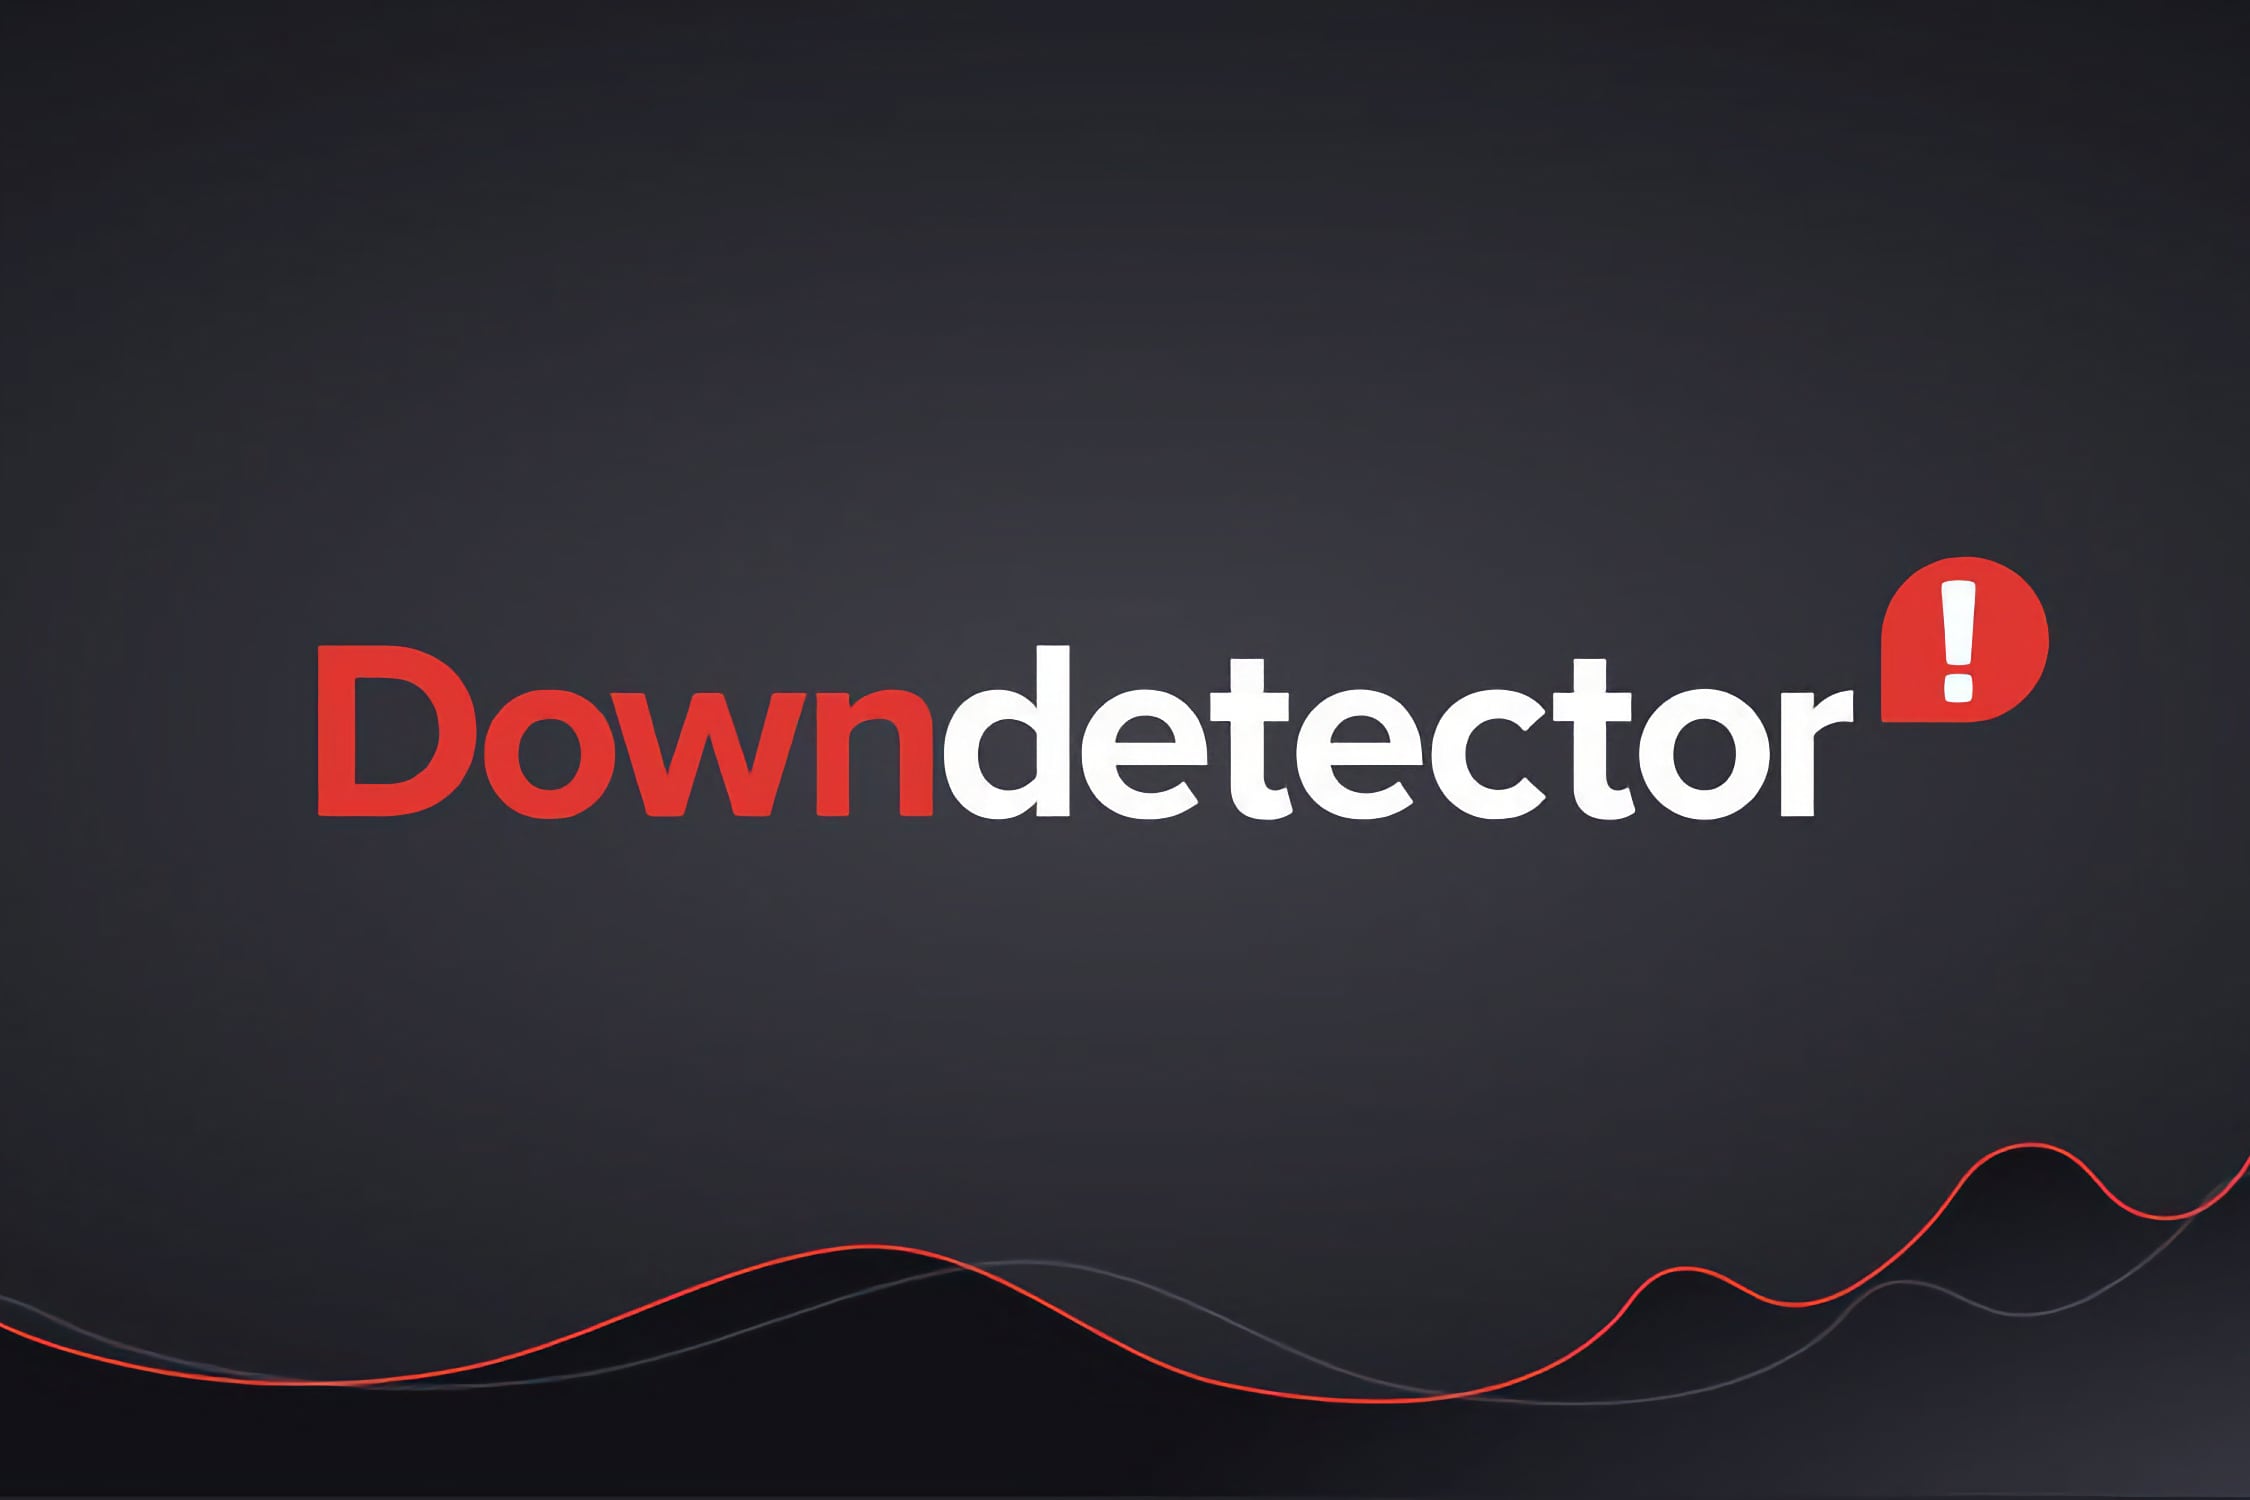 Российский аналог сервиса Downdetector запустится весной. Его разработка почти завершена